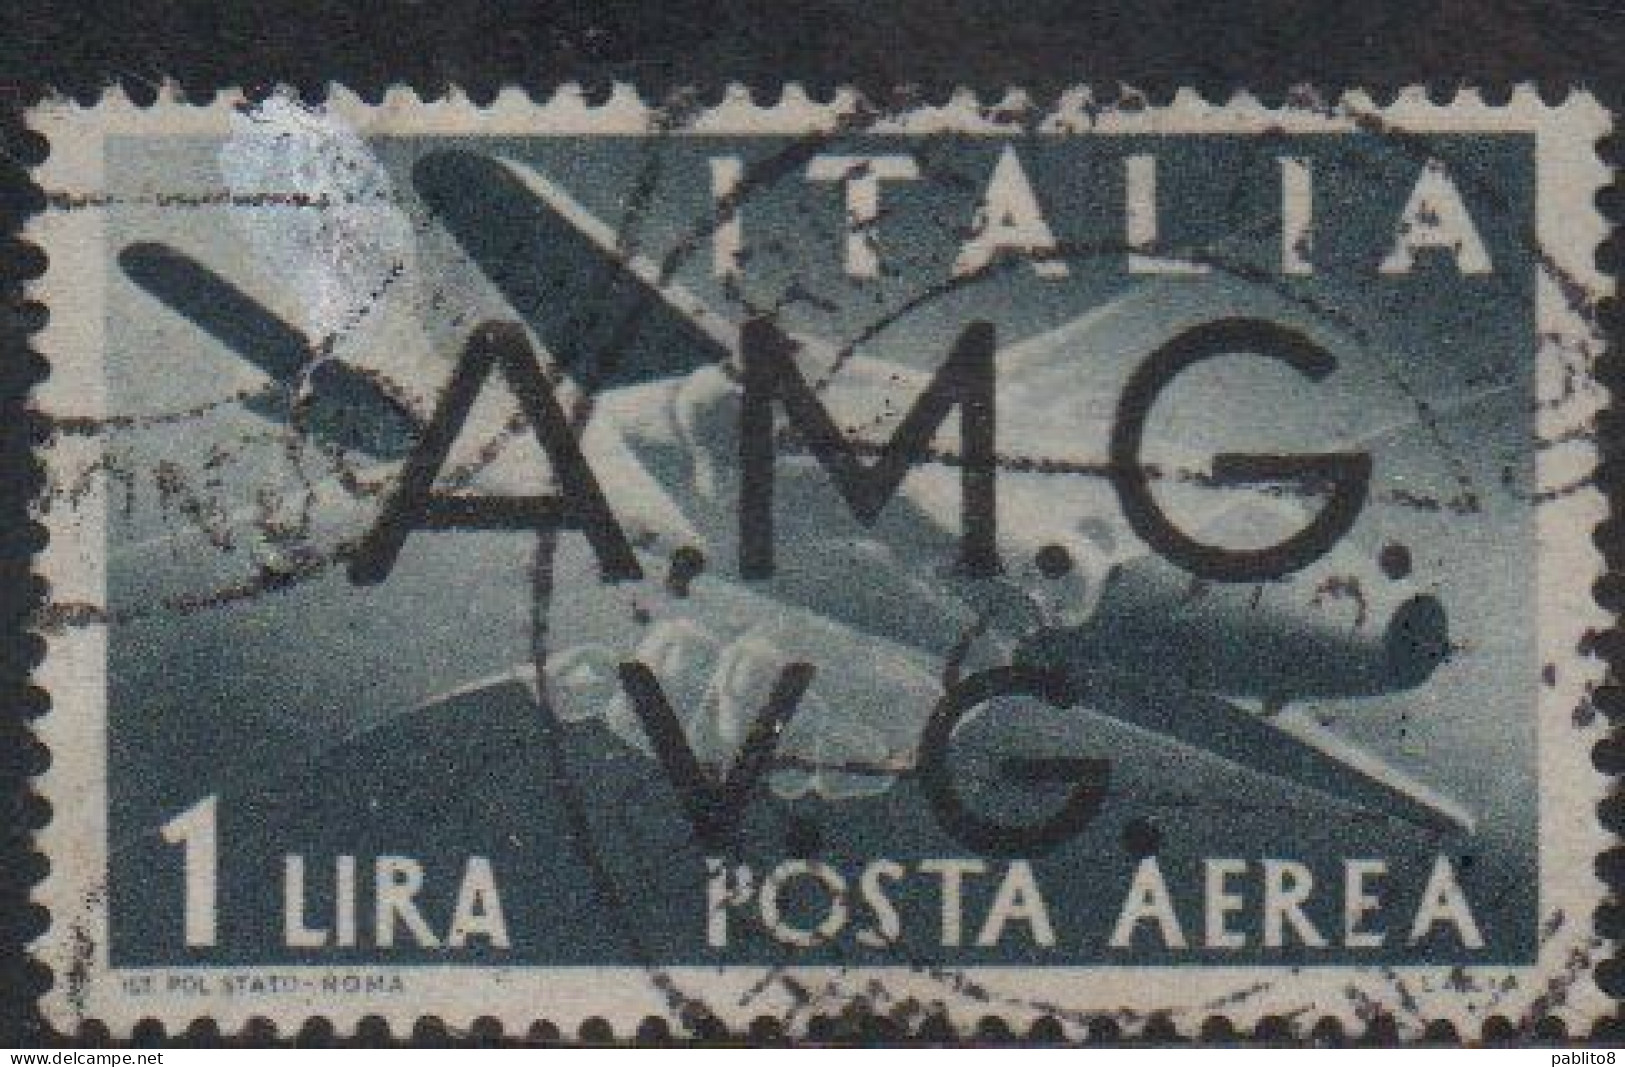 VENEZIA GIULIA 1945 - 1947 TRIESTE AMGVG AMG VG POSTA AEREA AIR MAIL LIRE 1 LIRA USATO USED OBLITERE' - Usados